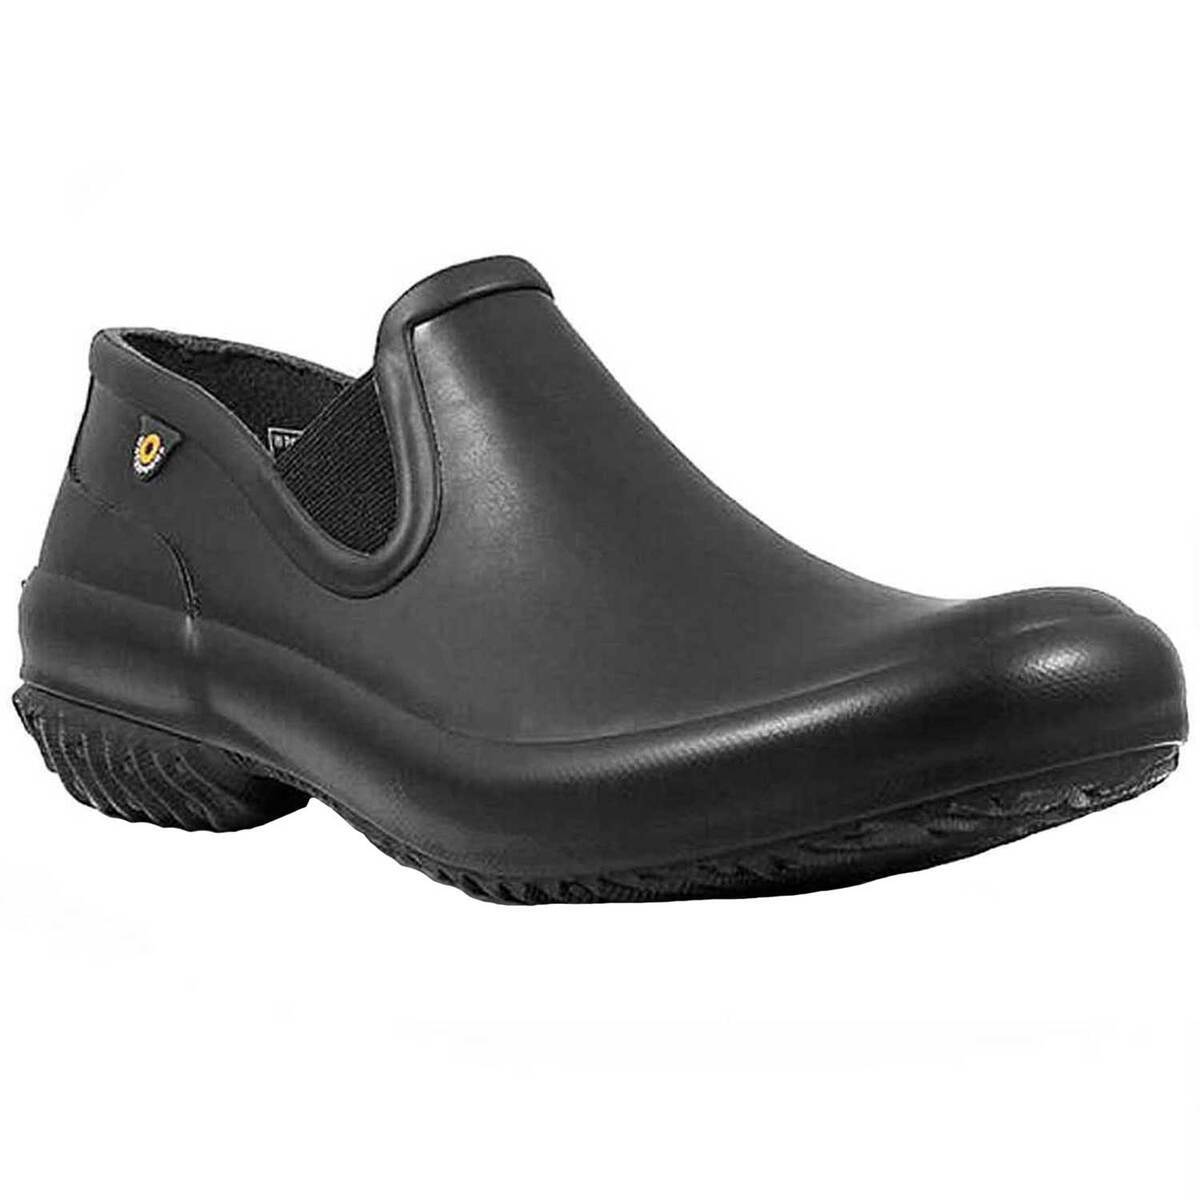 Bogs Women's Patch Slip On Garden Shoes | Sportsman's Warehouse